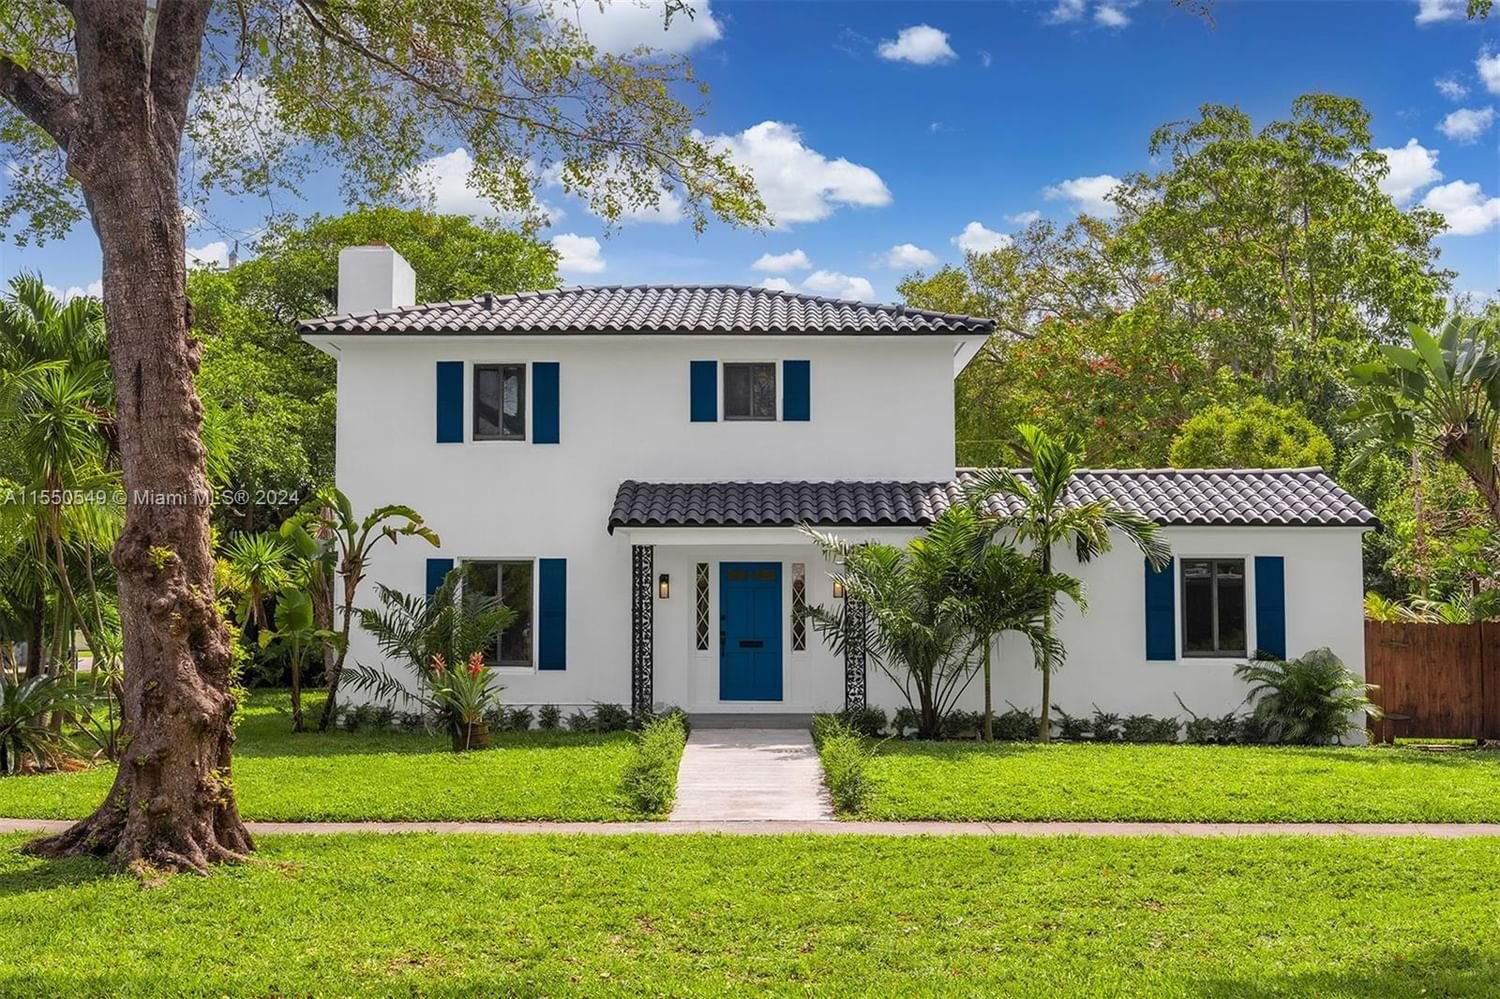 Real estate property located at 390 93rd St, Miami-Dade County, MIAMI SHORES SEC 1 AMD, Miami Shores, FL